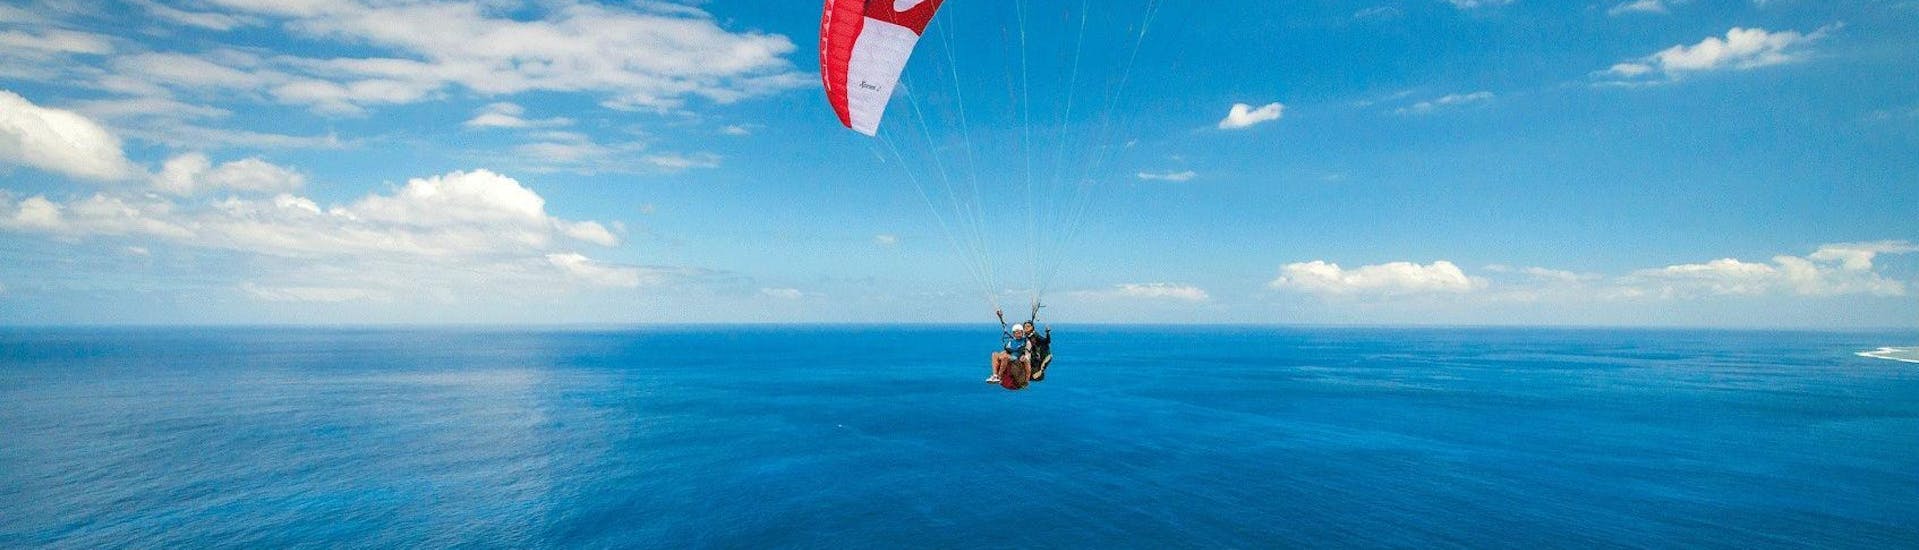 Un pilote de parapente d'Addict Parapente survole la baie de Saint-Leu lors d'un vol Parapente Biplace "Je pilote".